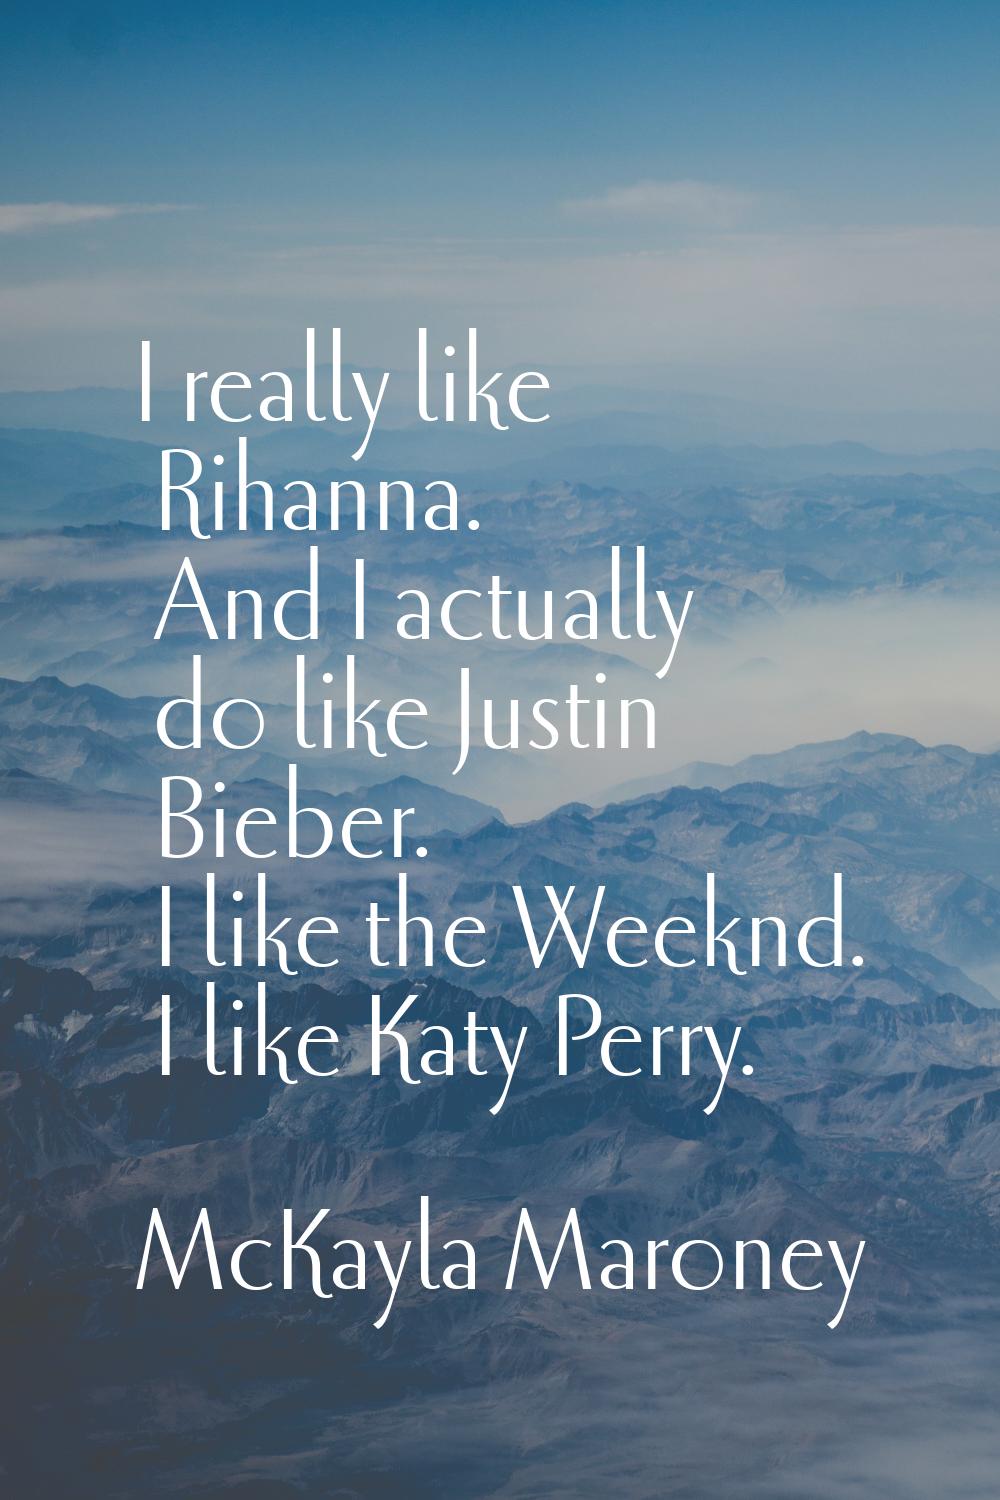 I really like Rihanna. And I actually do like Justin Bieber. I like the Weeknd. I like Katy Perry.